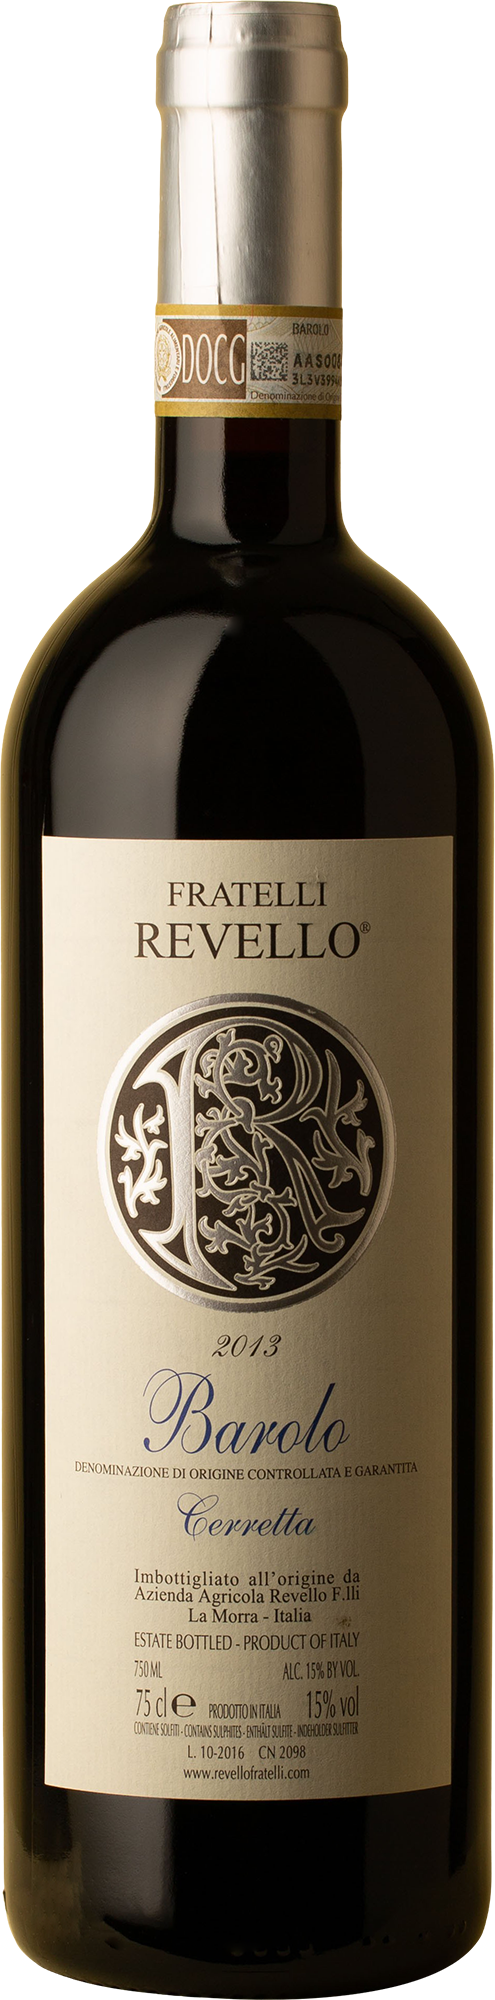 Revello - Barolo Cerretta Nebbiolo 2013 Red Wine